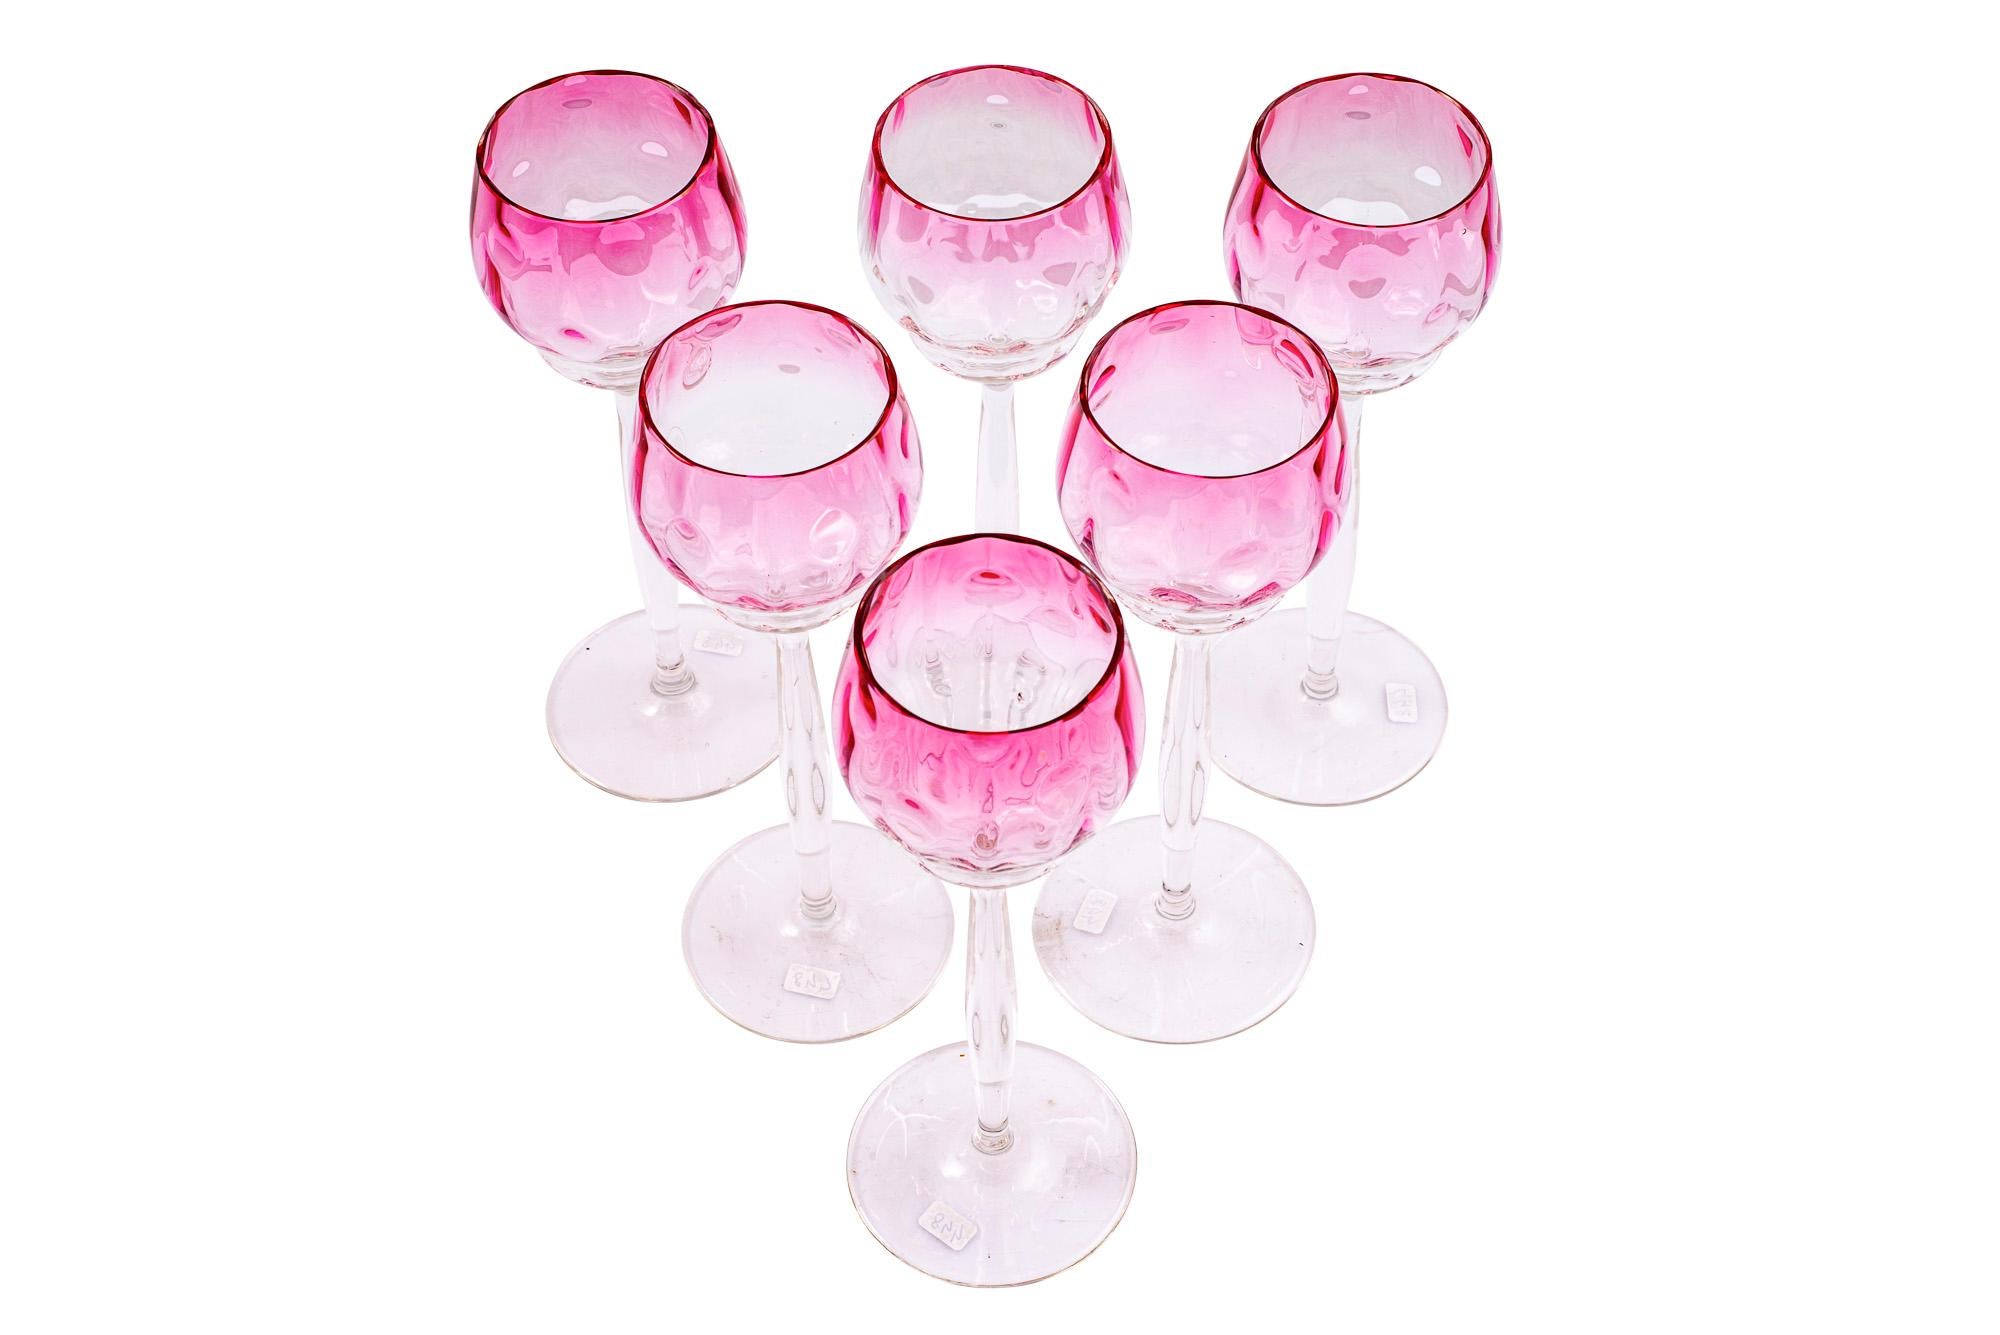 Ensemble de 6 verres à vin décor Meteor rose Koloman Moser Meyr's Neffe ca. 1901 Jugendstil autrichien

La décoration 